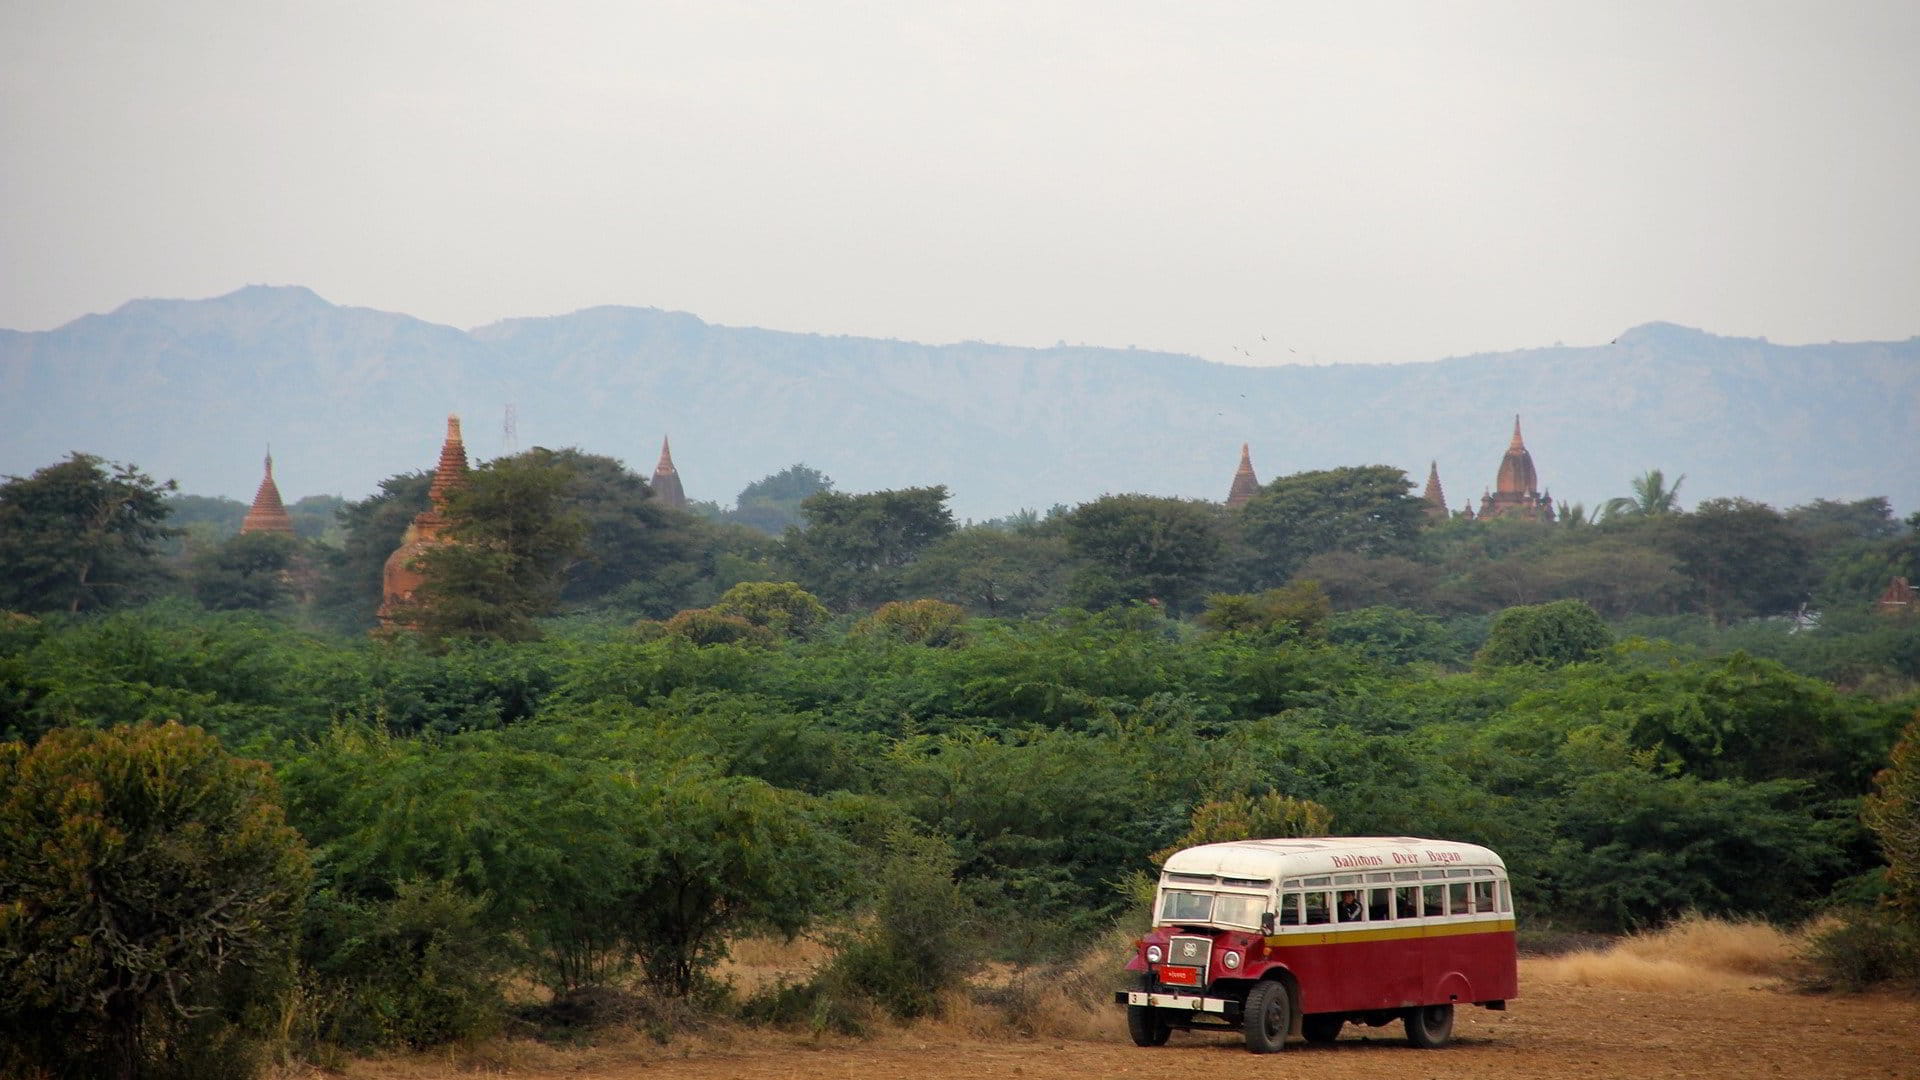 Les bus au Myanmar : confort et inconfort